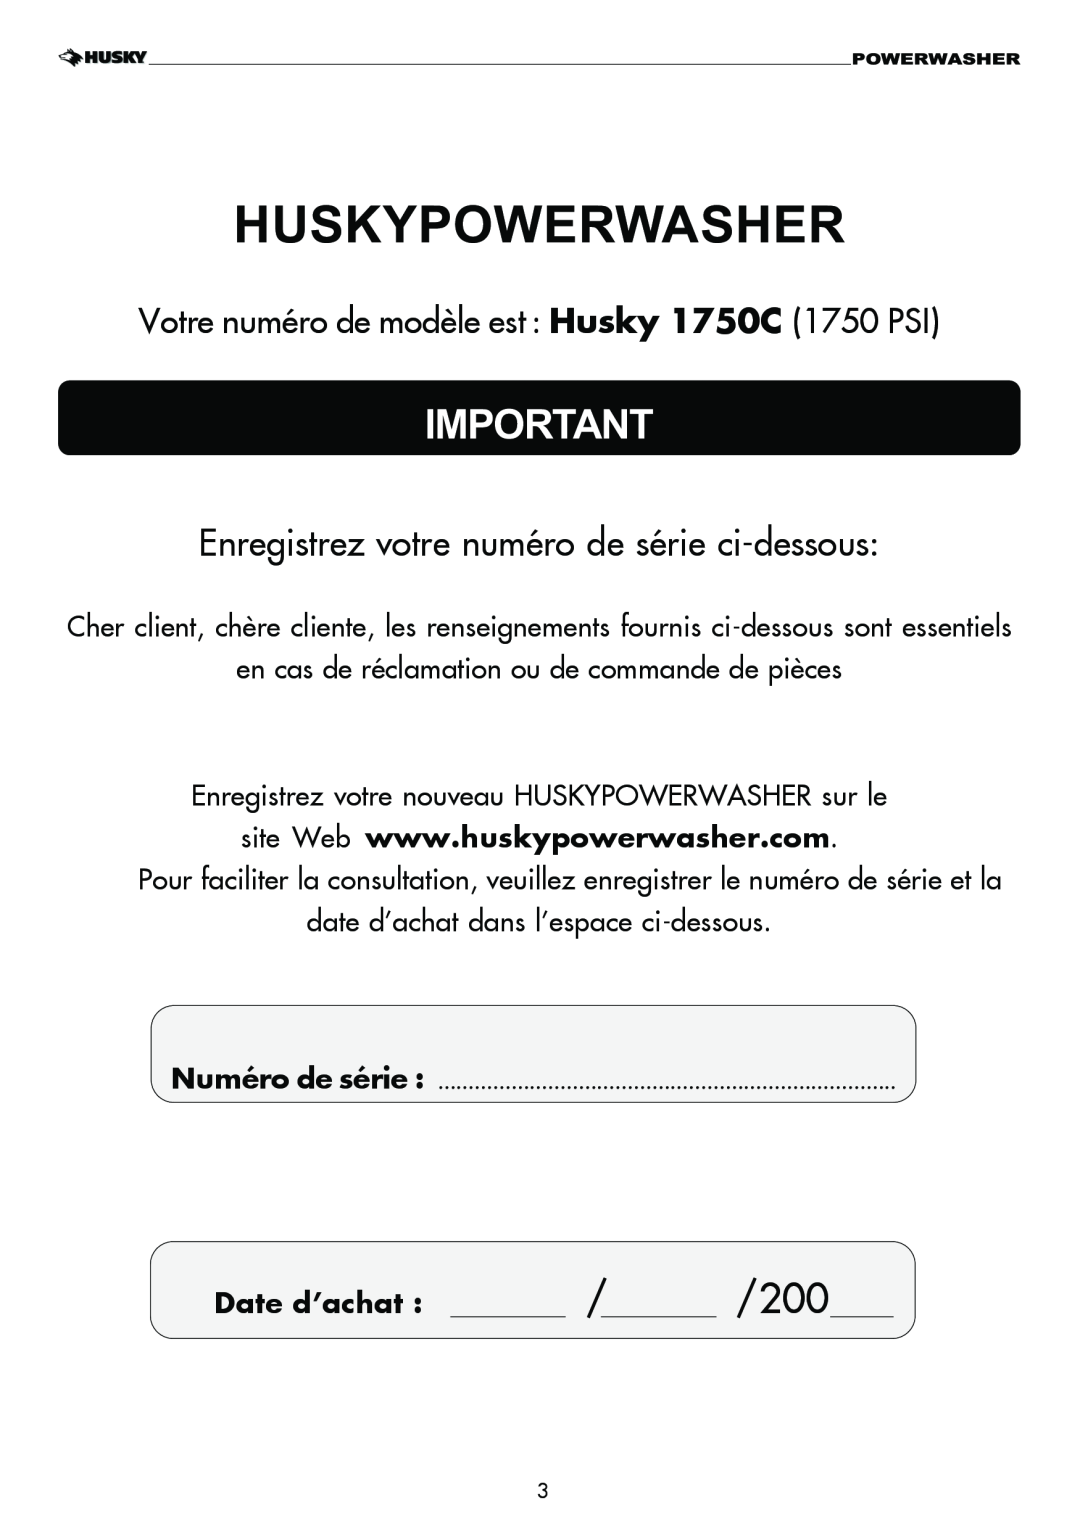 Husky 1750 PSL warranty Enregistrez votre numéro de série ci-dessous, Votre numéro de modèle est : Husky 1750C 1750 PSI 